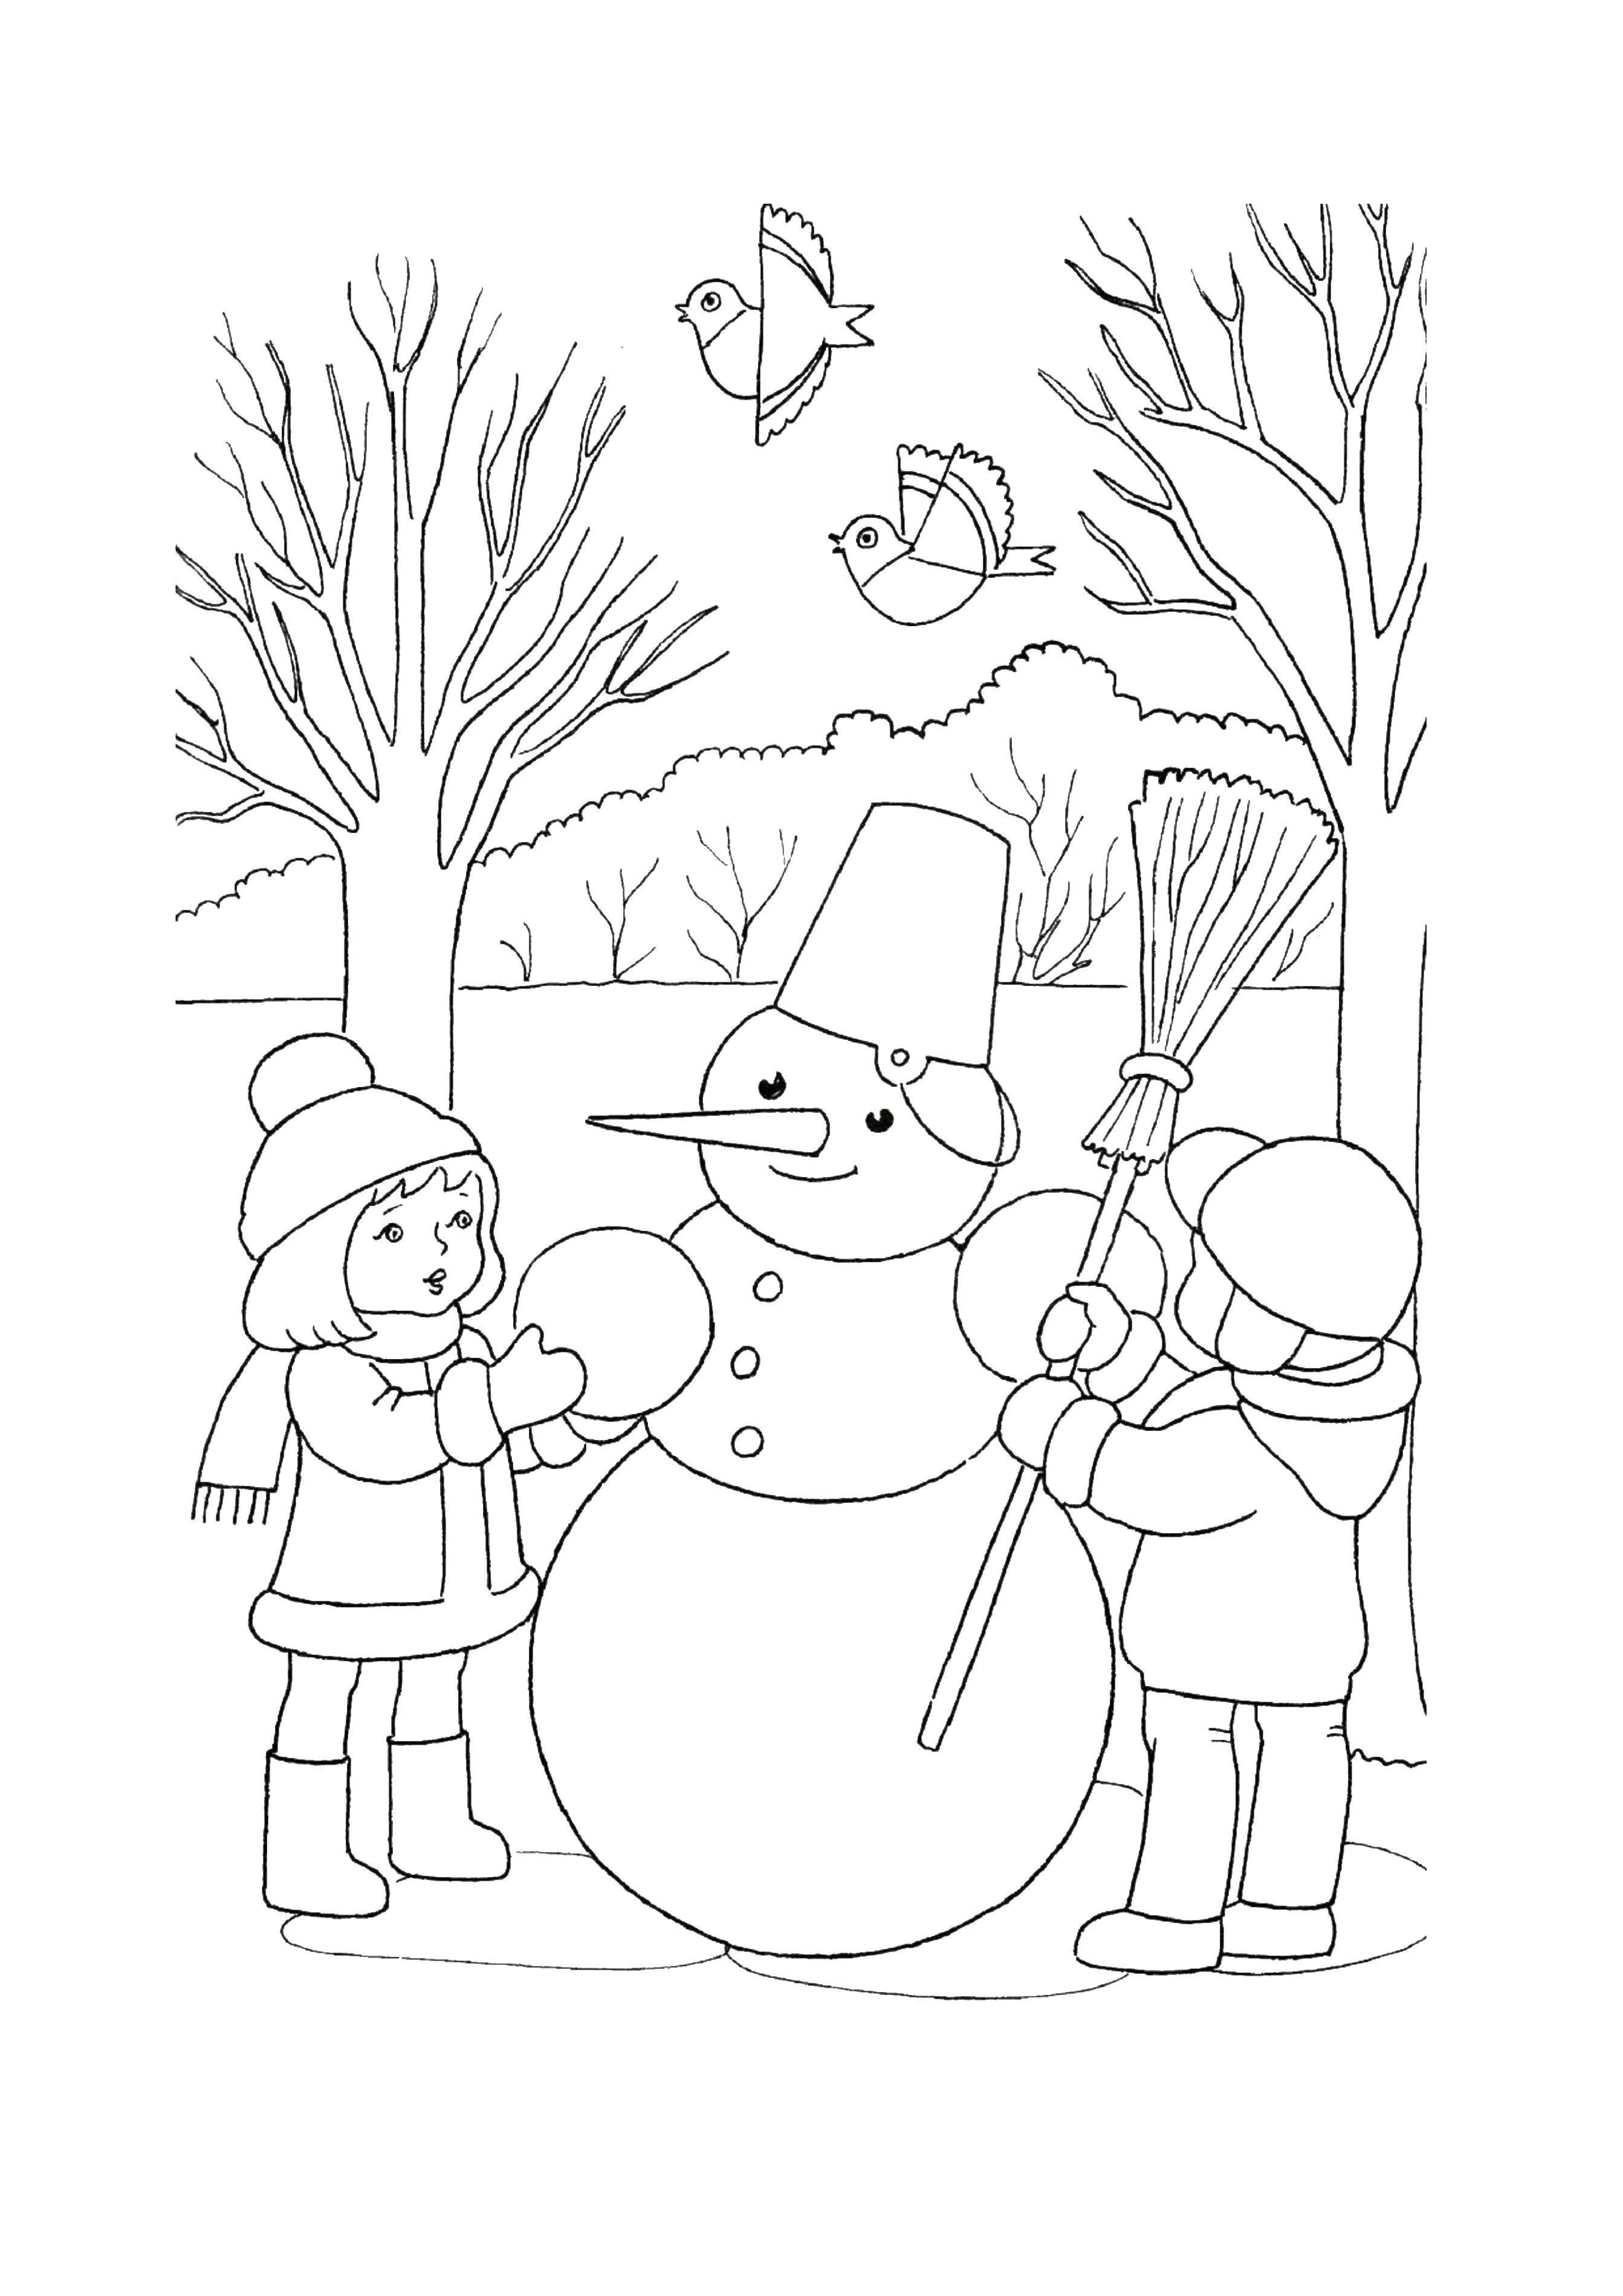 Раскраски для детей Зима, зимушка раскраски для школьников  Дети лепят снеговика с метлой